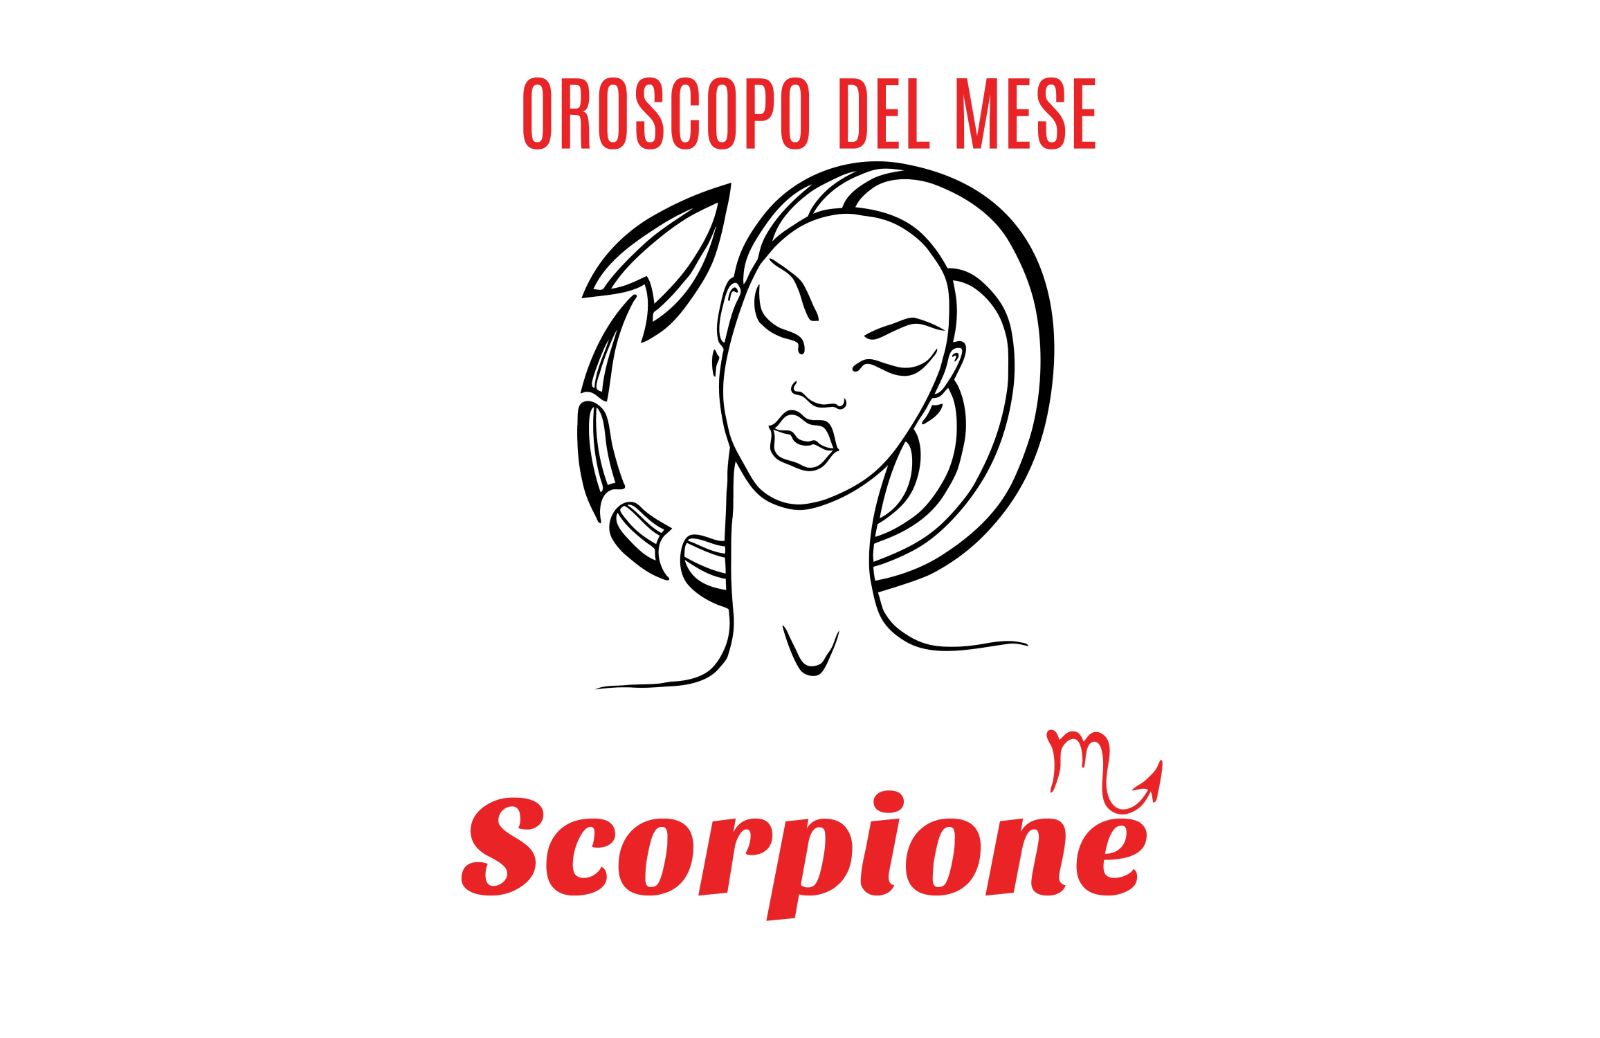 Oroscopo del mese: Scorpione - maggio 2019